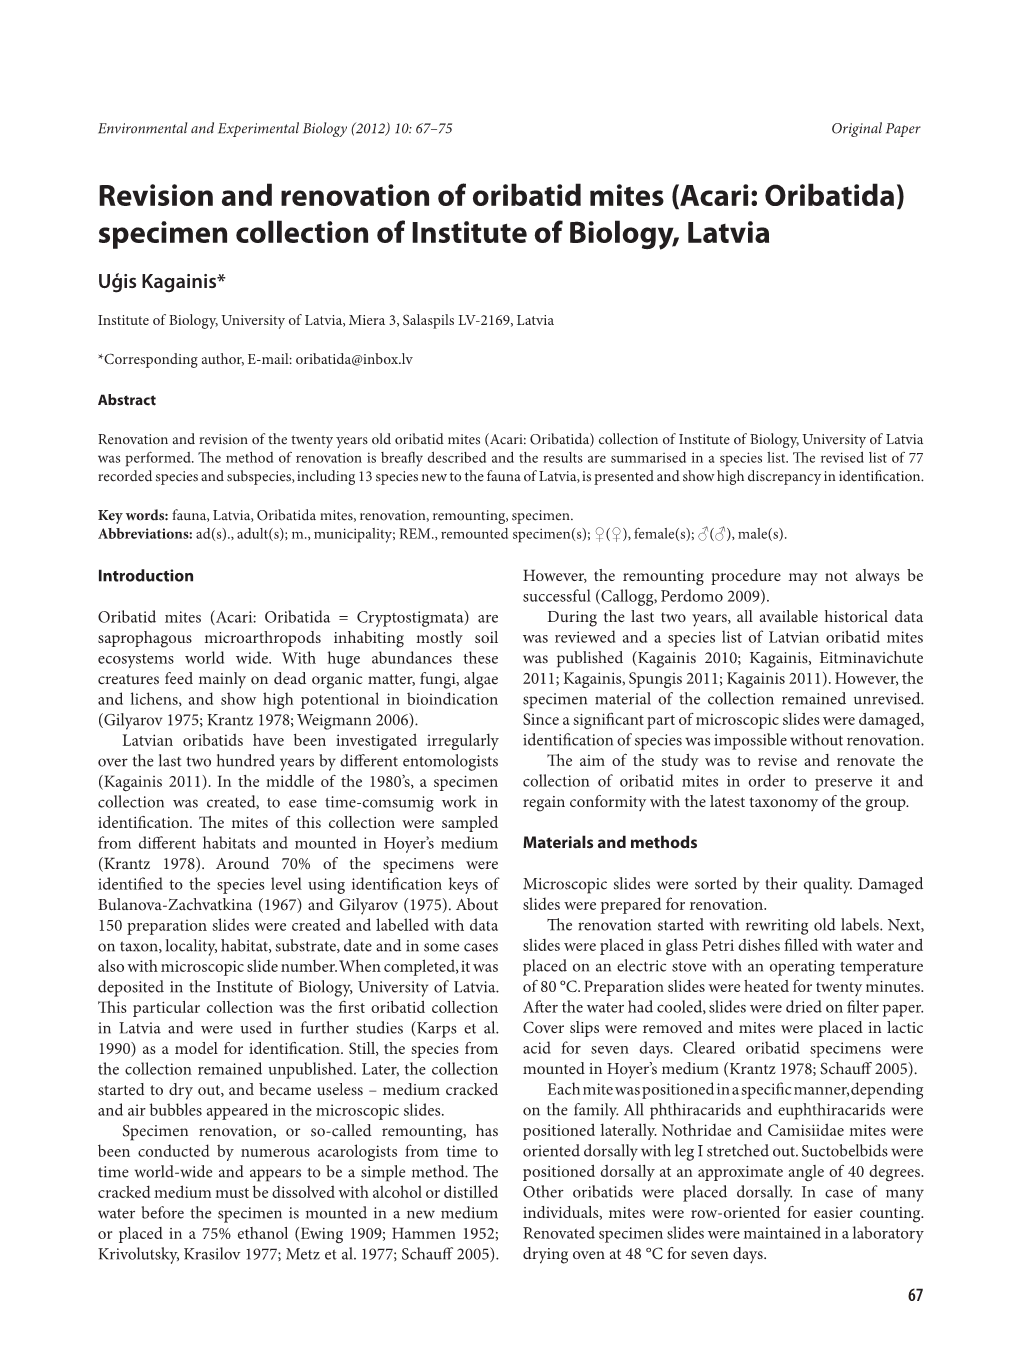 Revision and Renovation of Oribatid Mites (Acari: Oribatida) Specimen Collection of Institute of Biology, Latvia